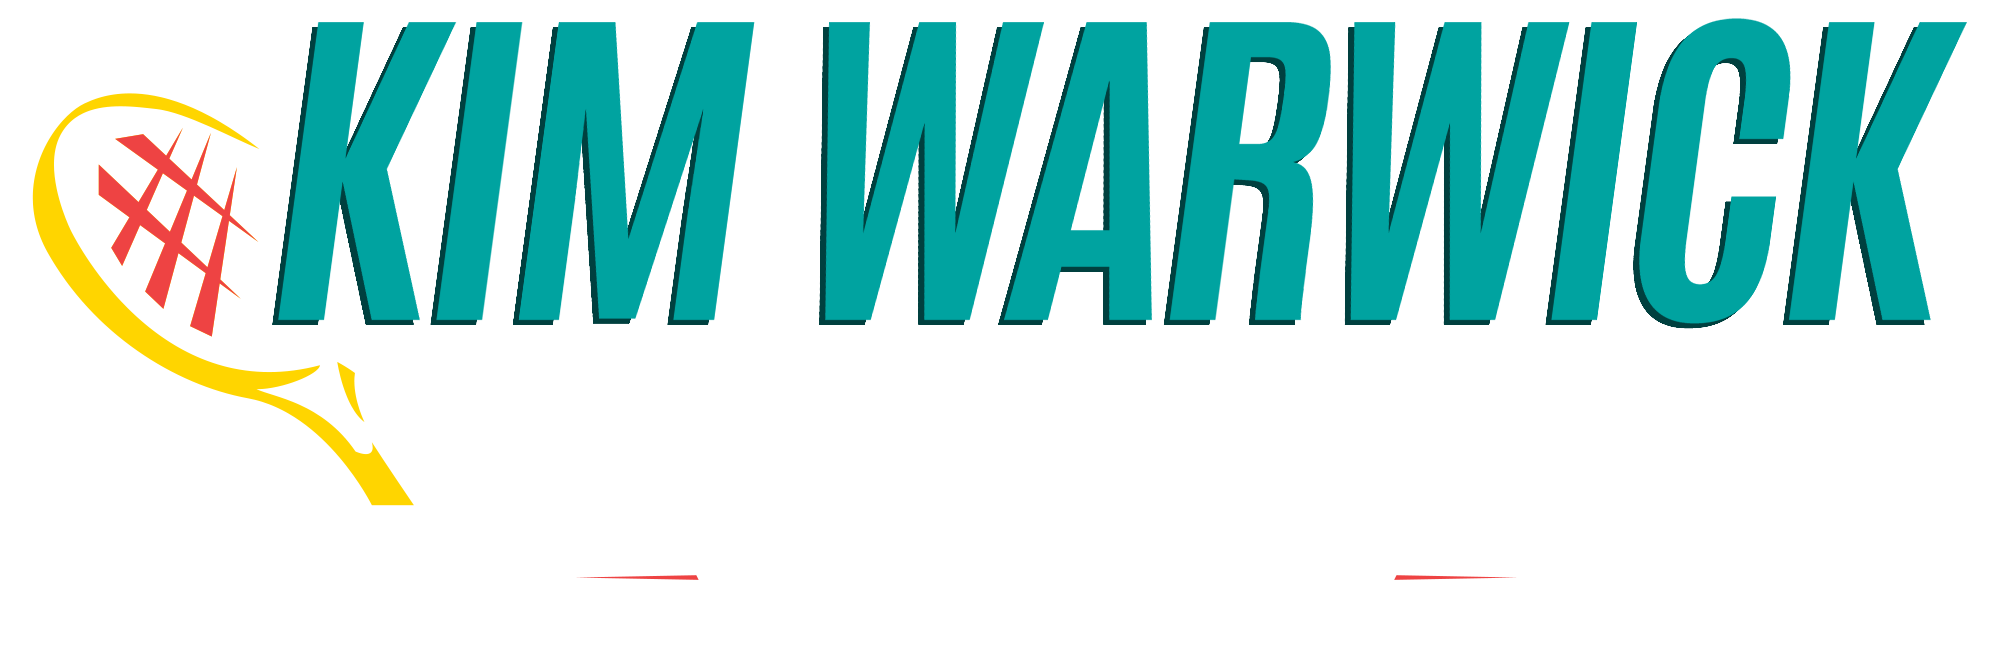 Kim Warwick Tennis Academy